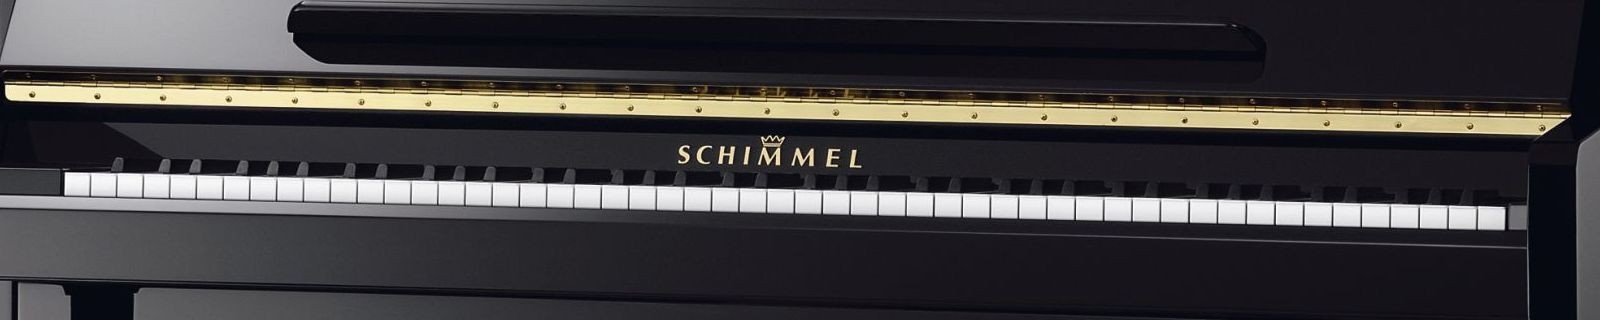 Schimmel acoustic pianos